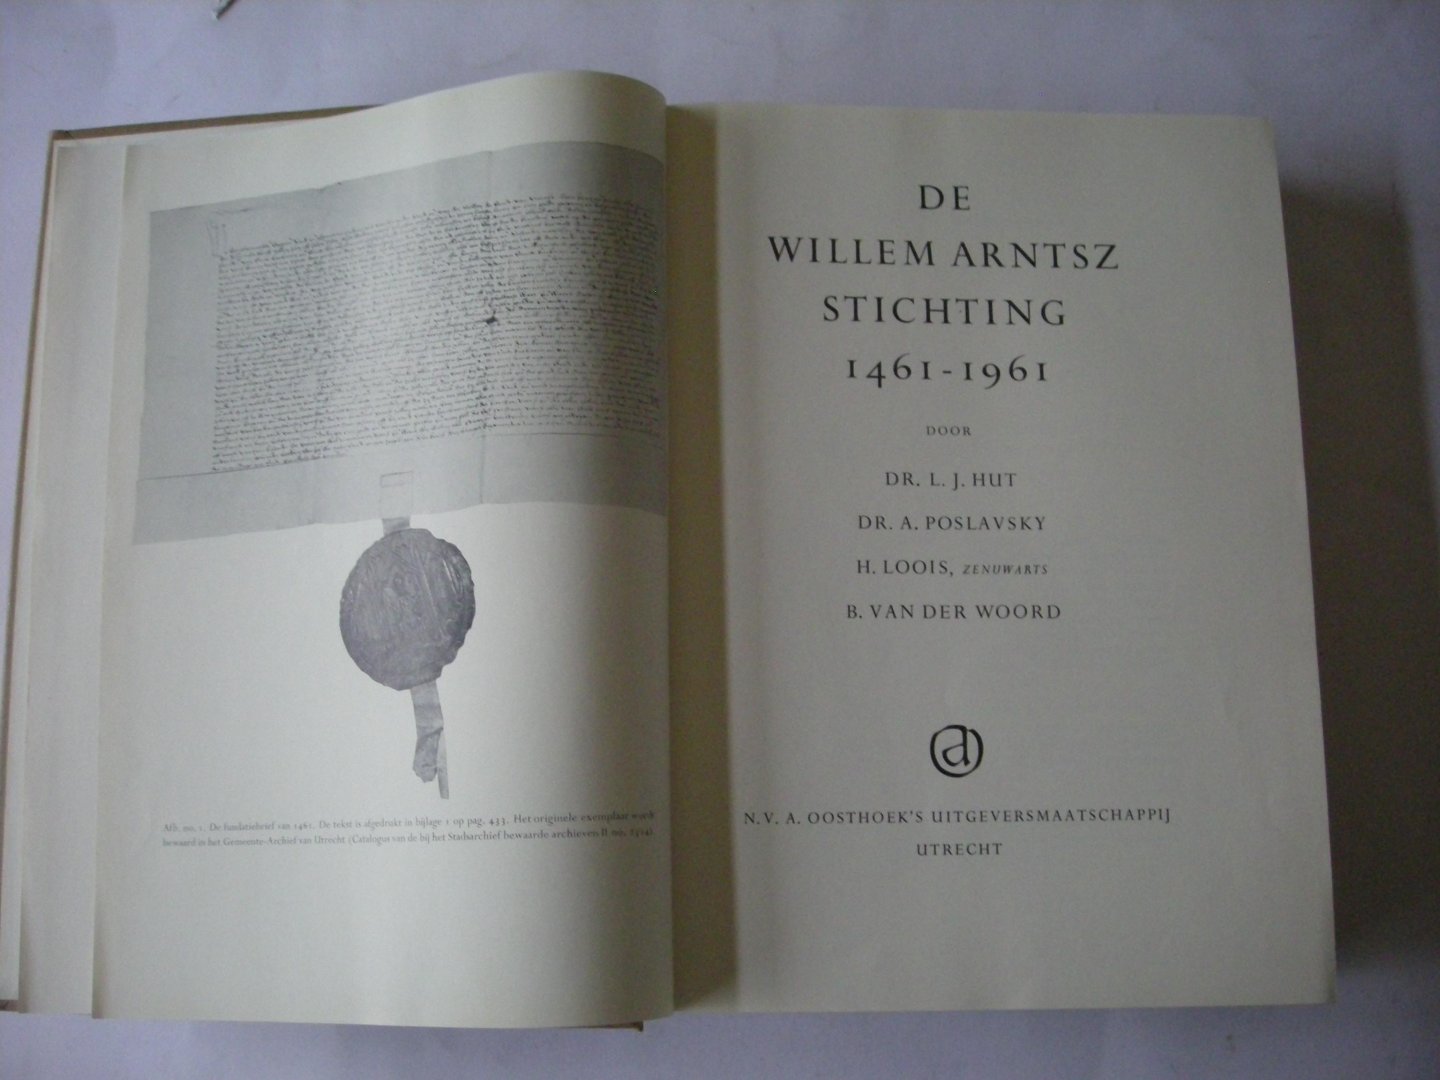 Hut, L.J.,  Poslavsky, A., Loois, H., (deel I),  Woord,B.van der, (deel II) - De Willem Arntsz Stichting 1461 - 1961. 2 delen in 1 band